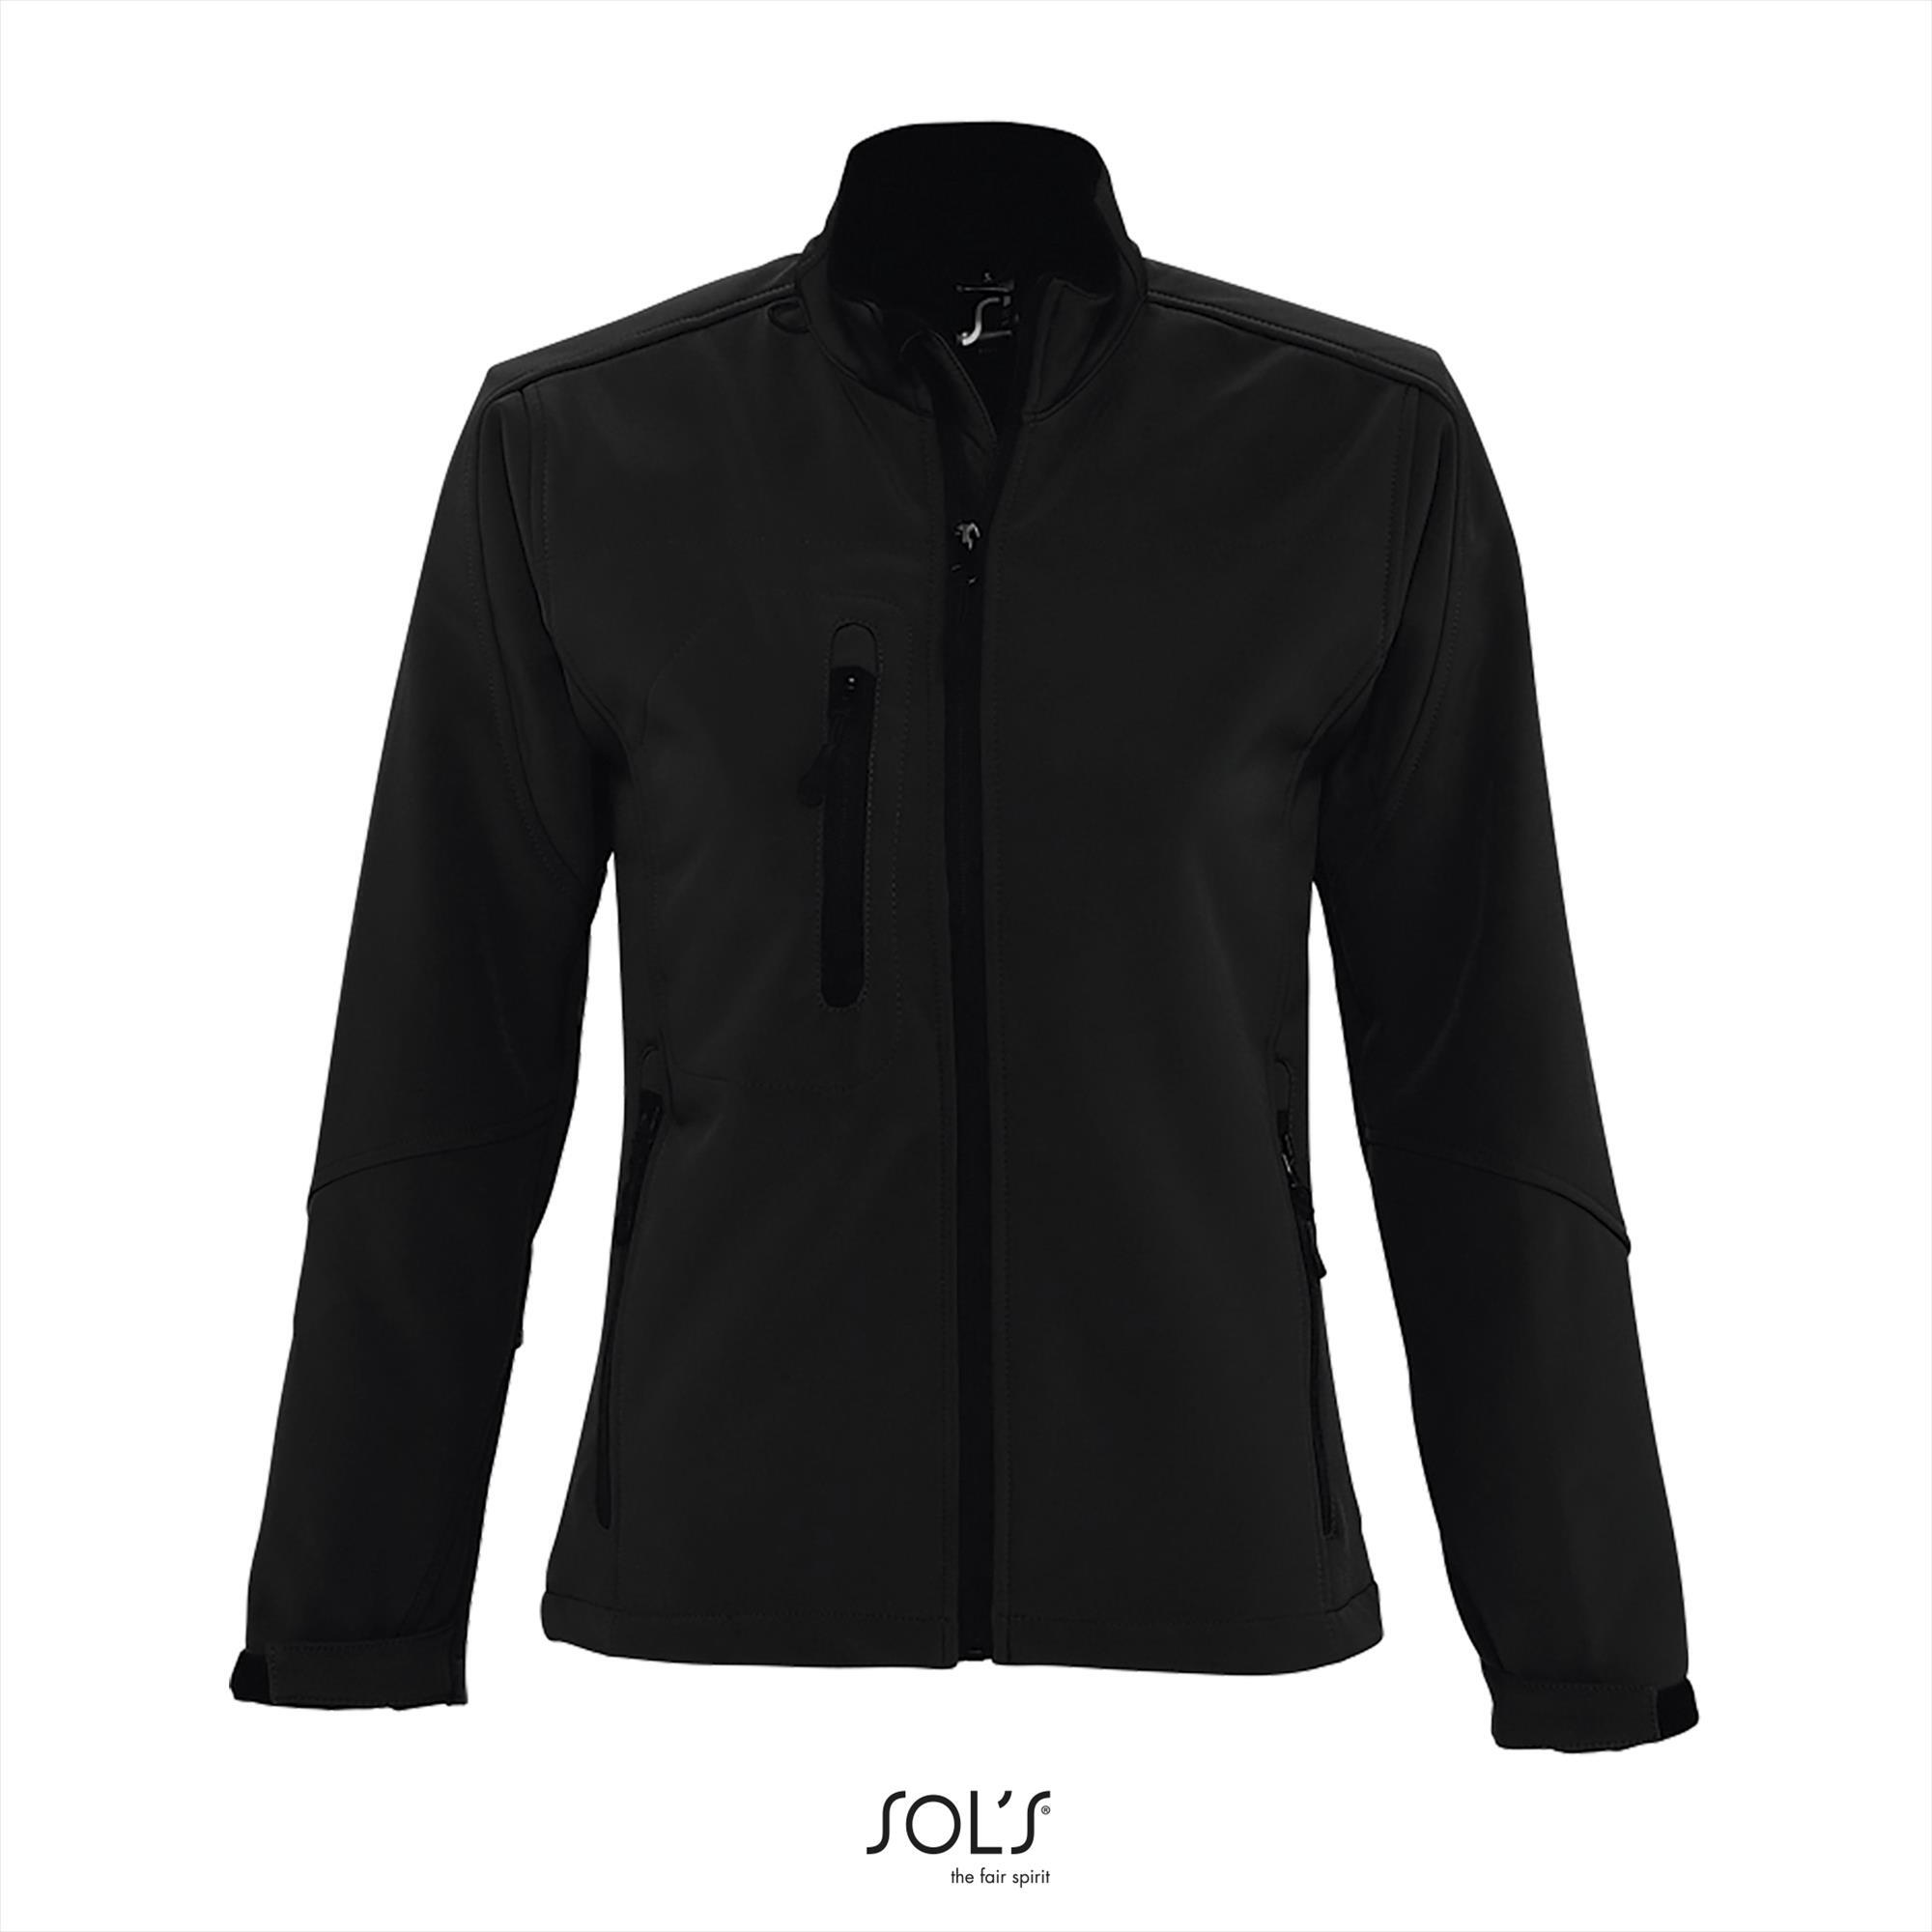 Sportieve dames softshell jacket zwart met een borstzakje.